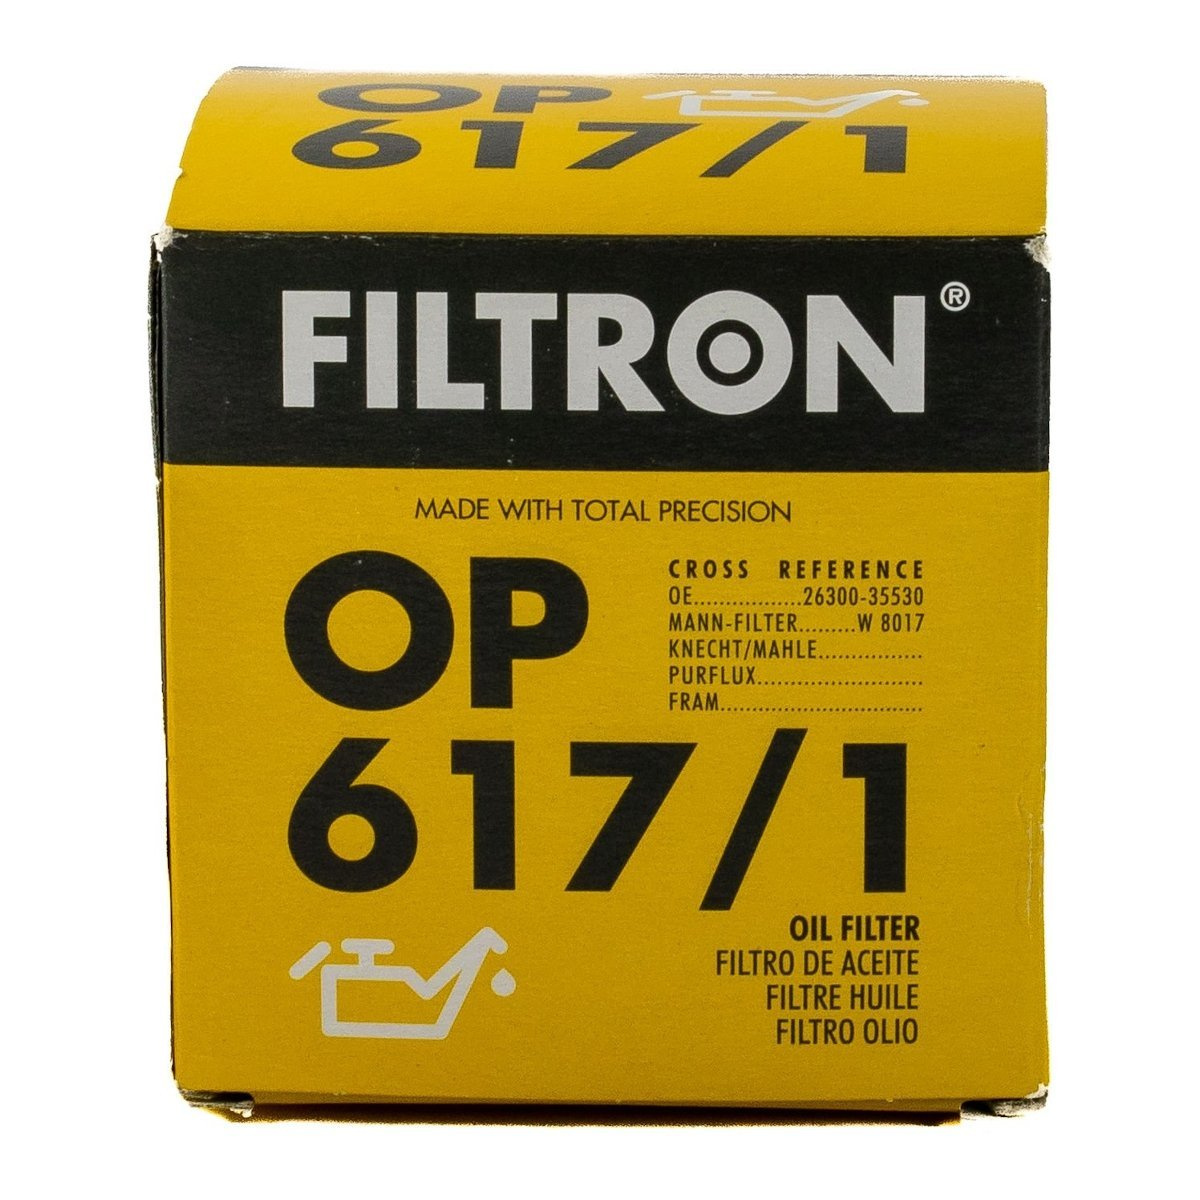 FILTRON filtr oleju OP617/1 Hyundai Kia • autokosmetyki